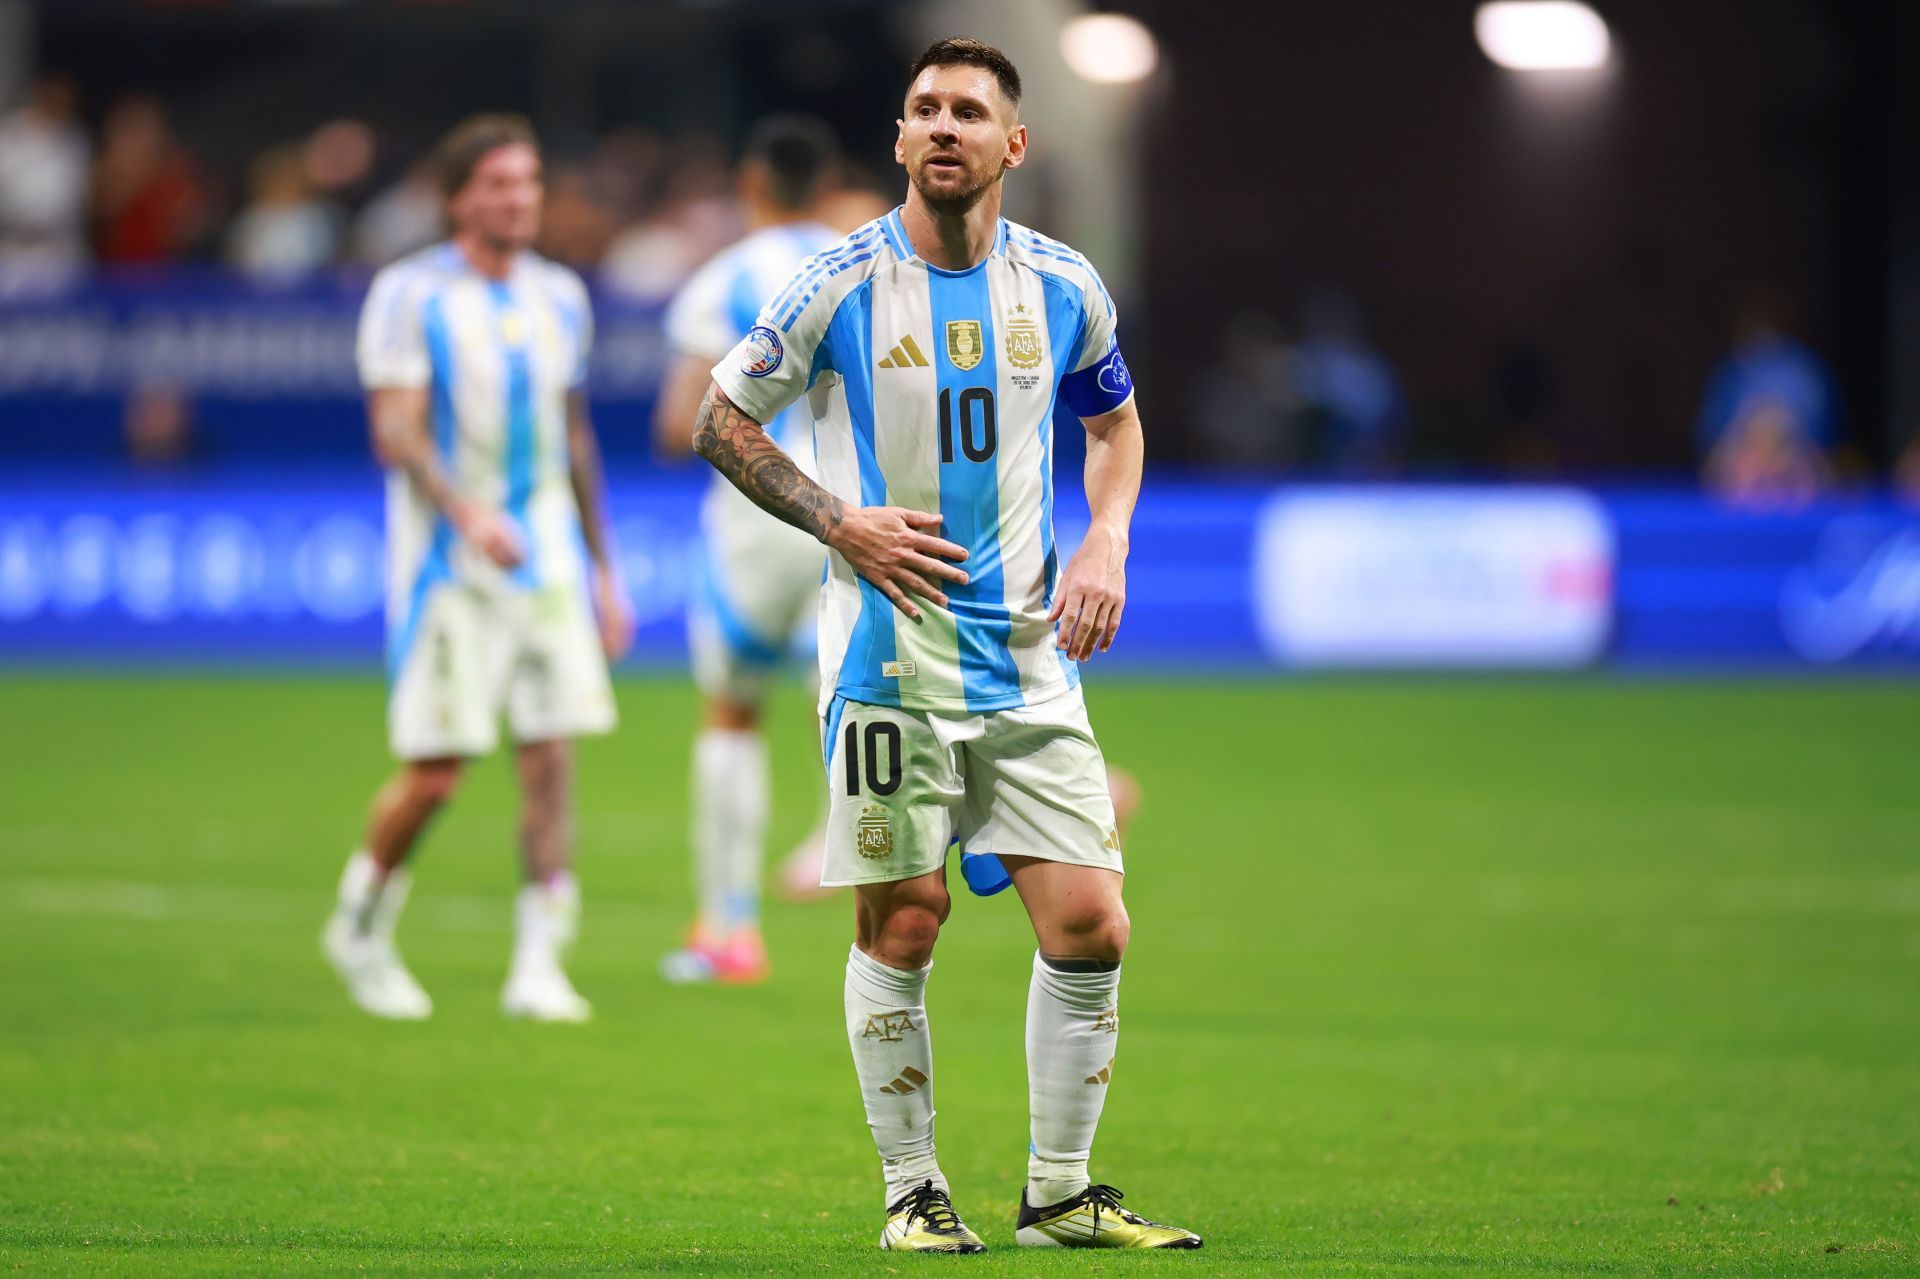 Argentina captain Lionel Messi